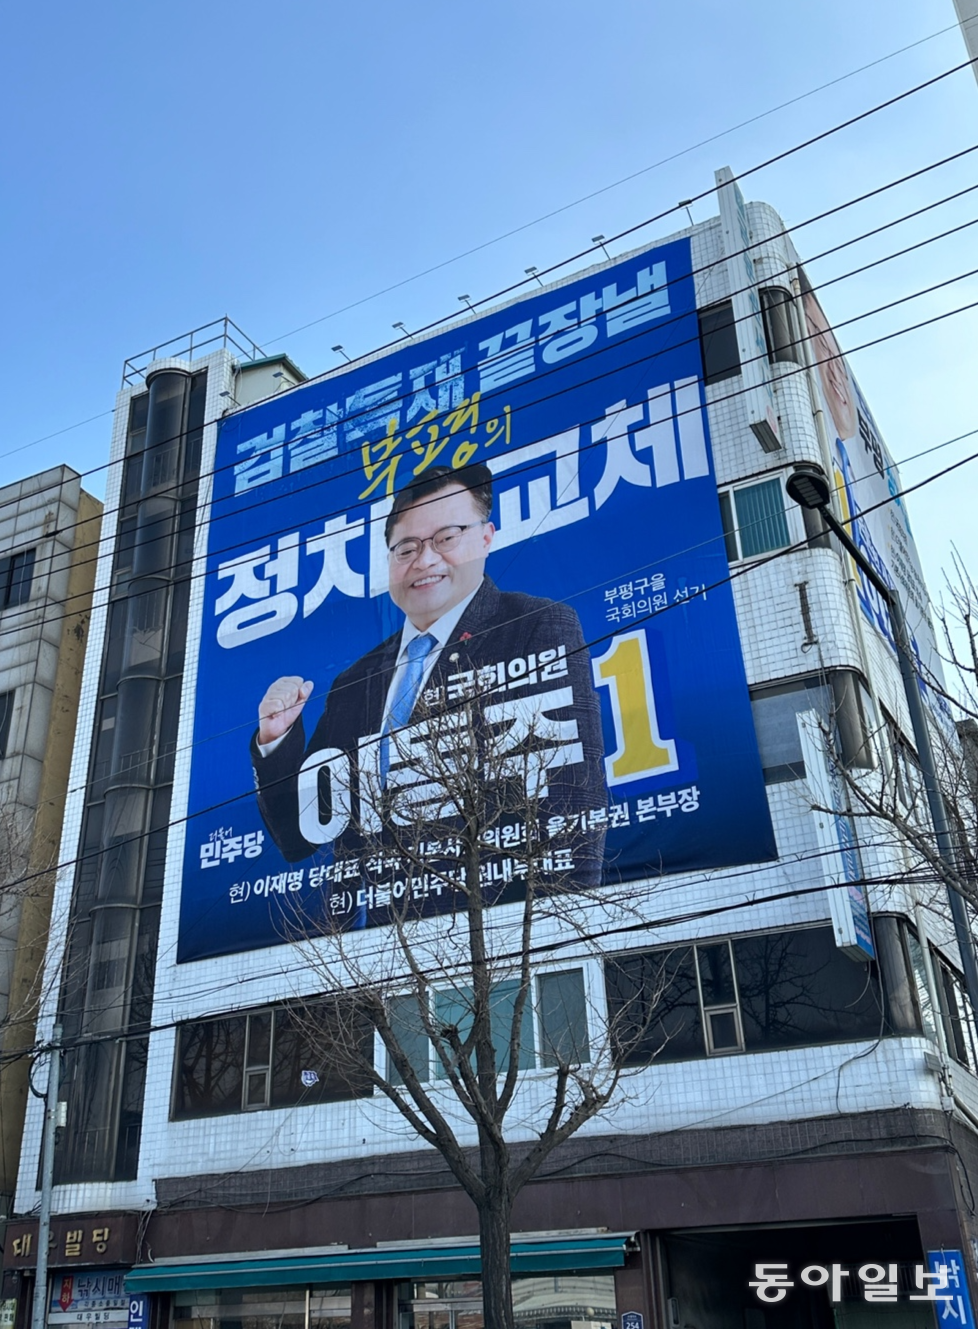 12일 인천 부평구 더불어민주당 이동주 의원(비례대표) 예비후보 선거사무소가 위치한 건물 외벽에 걸린 대형 포스터.